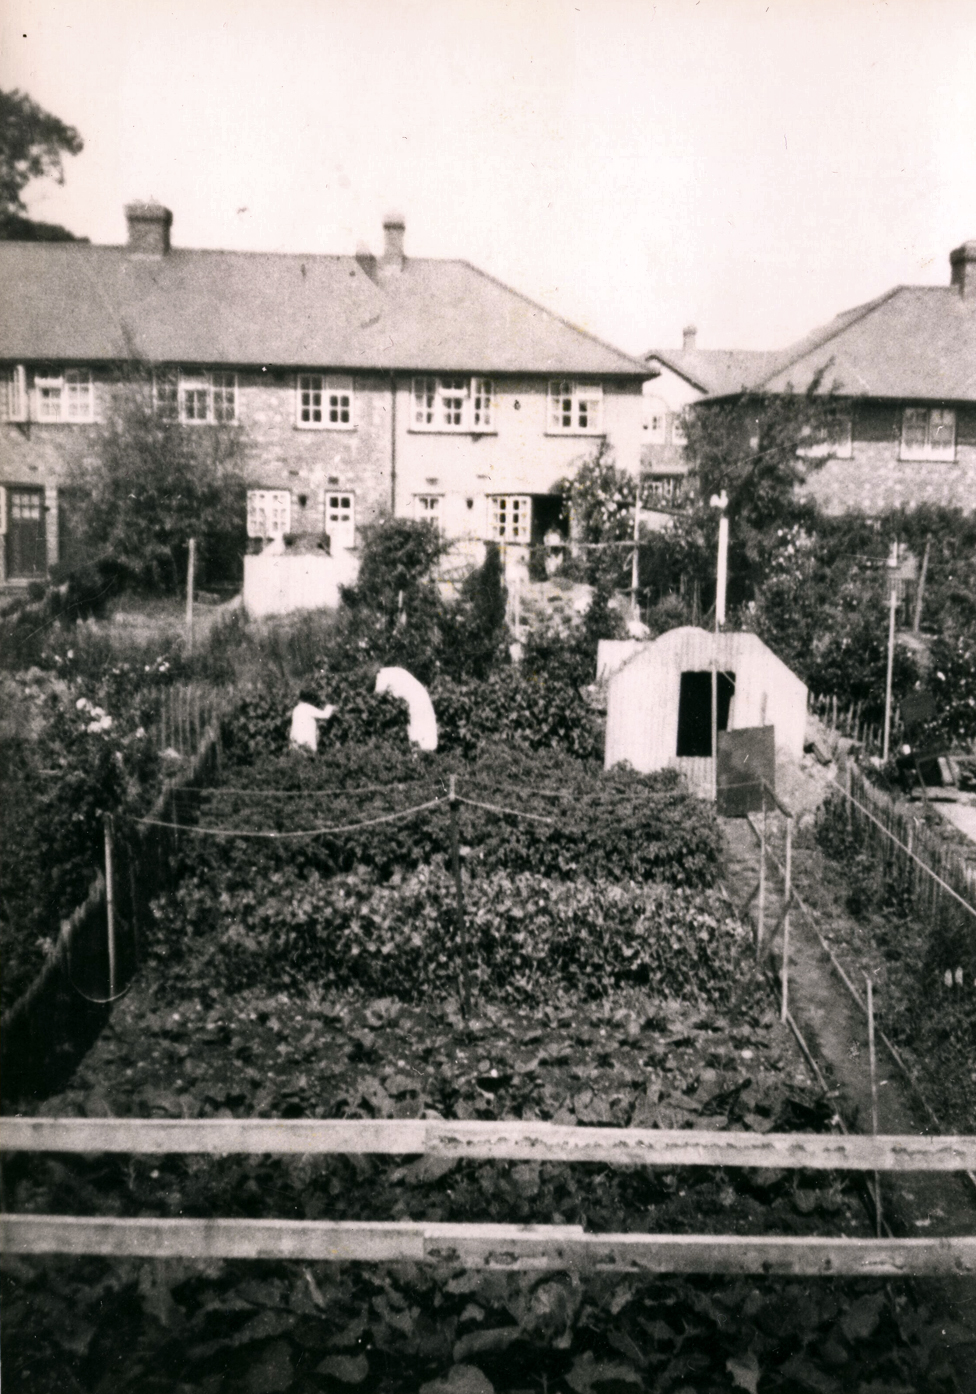 Frida Pi: &Moja mama Hilda i sestra Lilijen u vrtu nae kue u Birmingemu 1940. Bata i parcela su bile tatine. Nae sklonite je bilo poplavljeno, ali se na fotografiji ne vidi ni jedan in neiskorienog prostora.&/Freda Peach